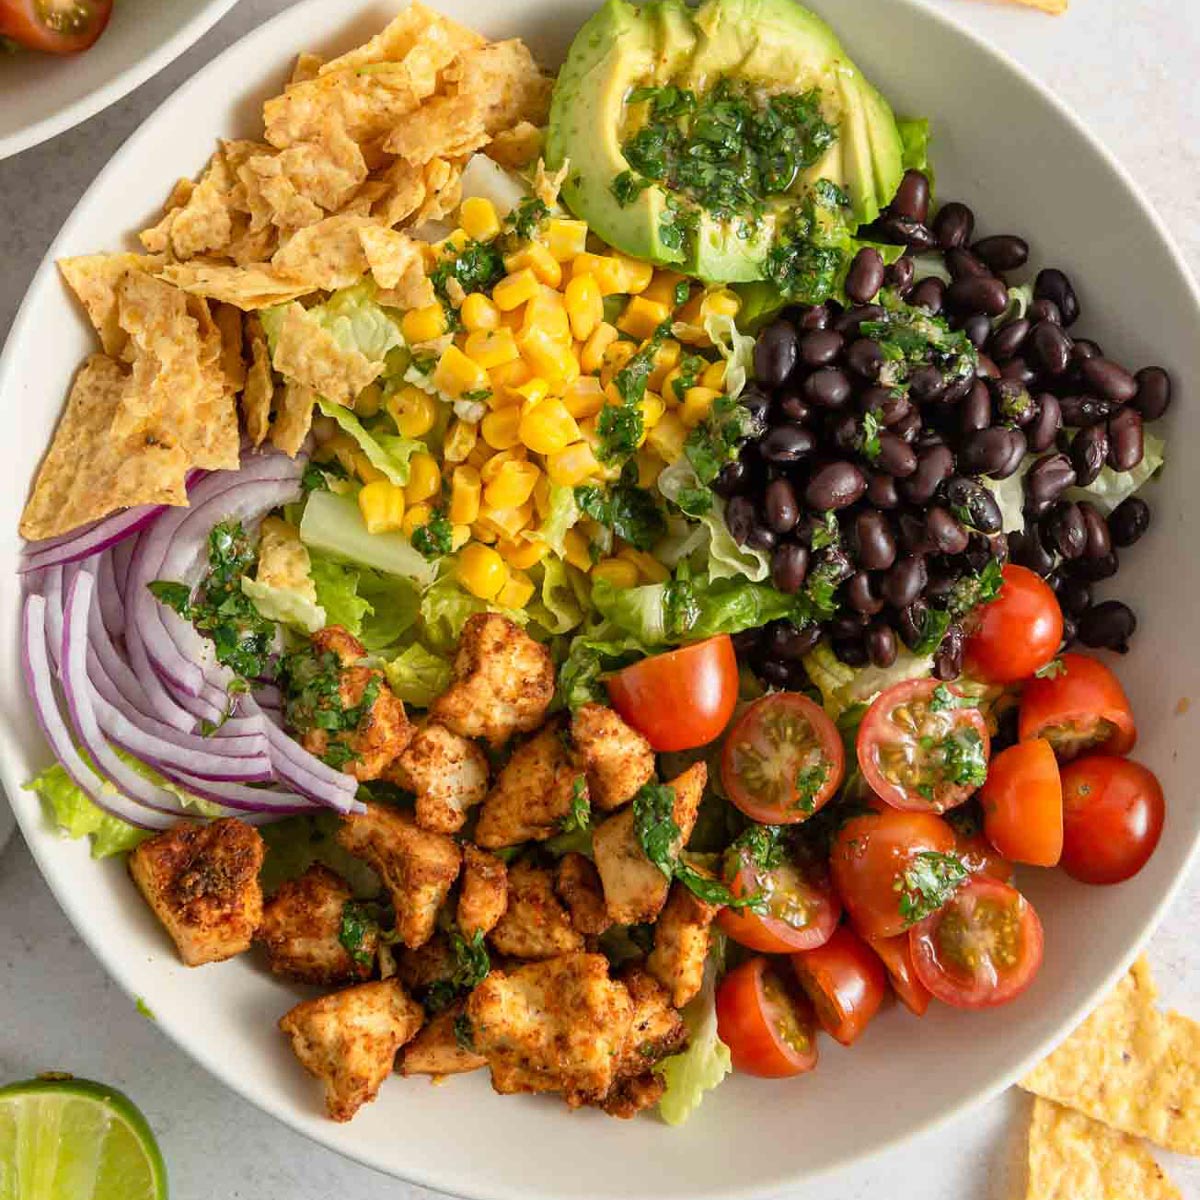 Easy Healthy Vegan Gluten Free Healthy Santa Fe Salad Recipe Cilantro Lime Dressing 